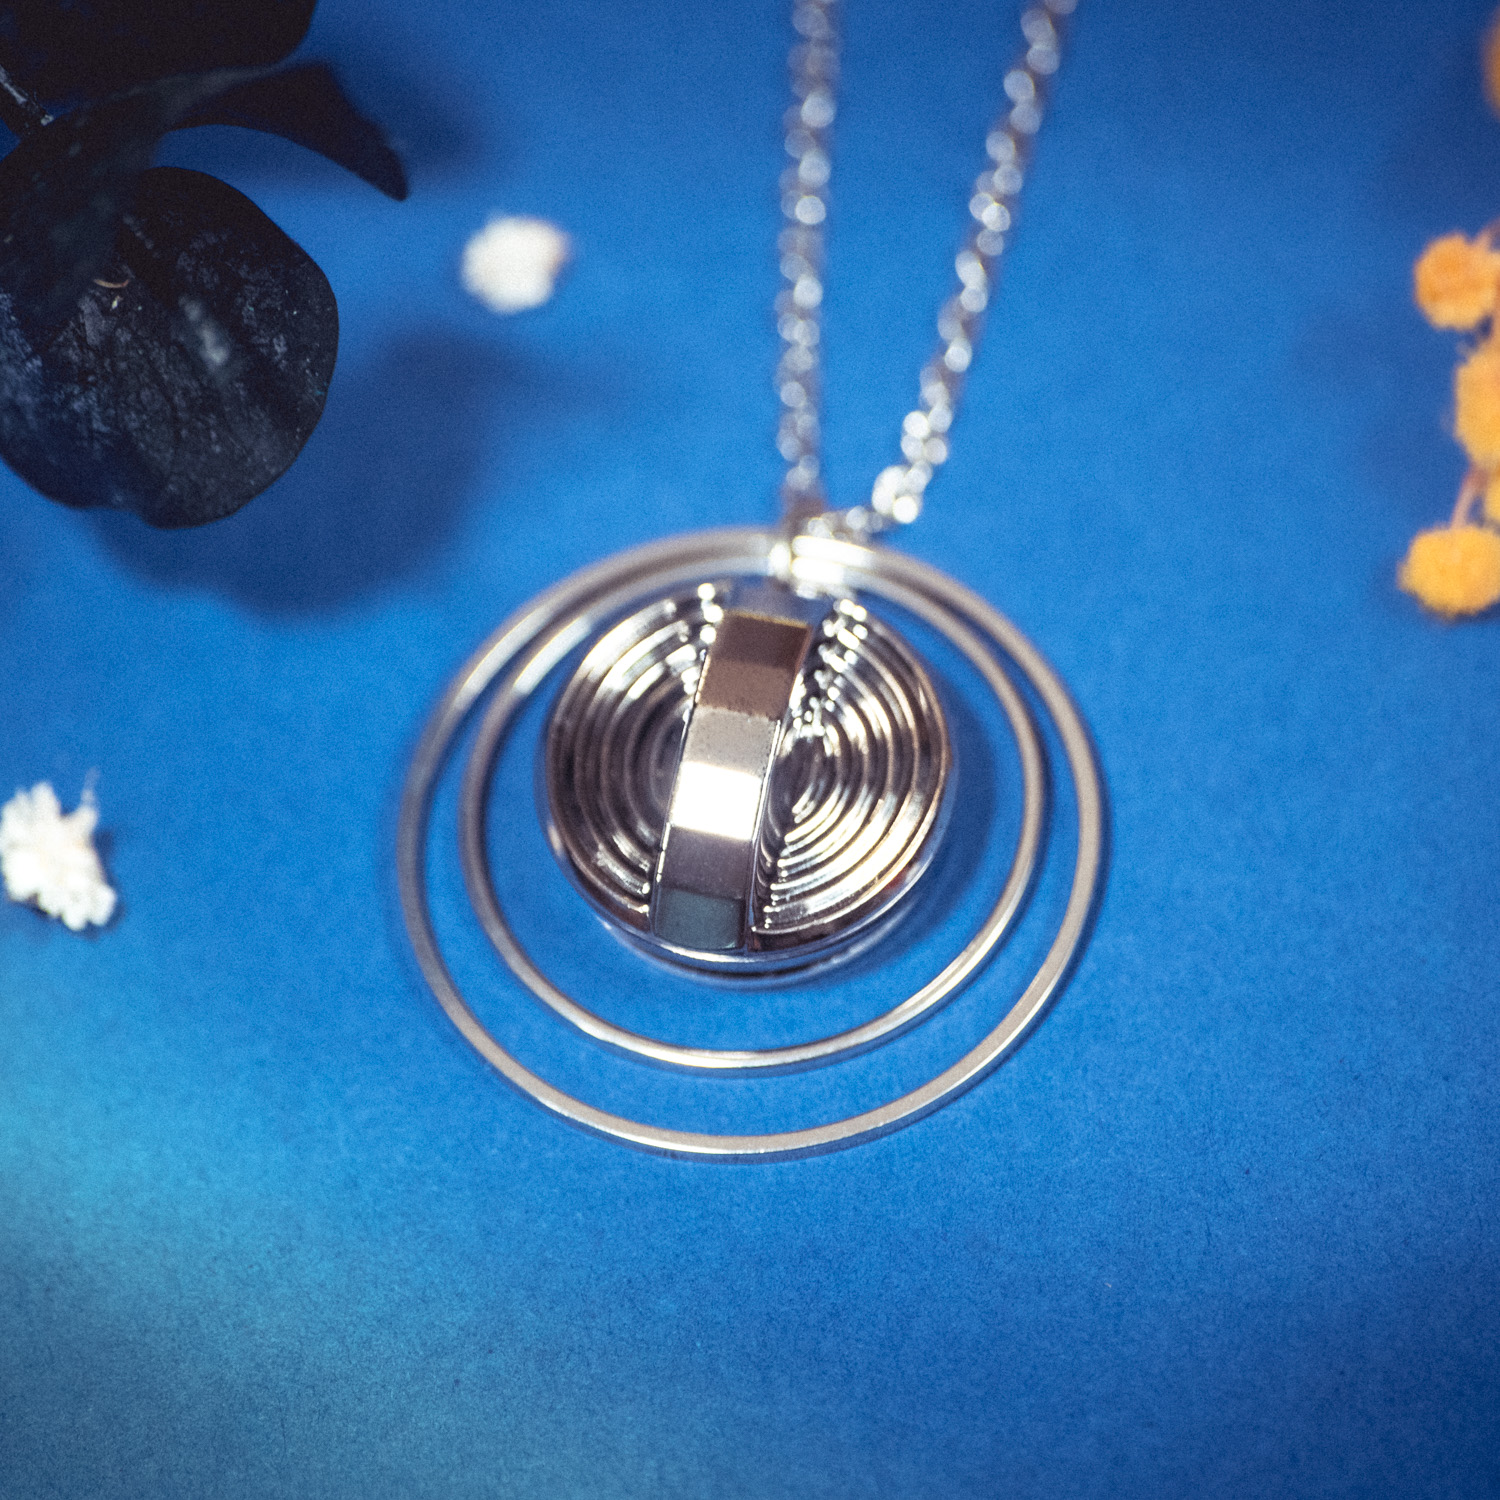 Assuna – Collier Lunare Zoé argenté – bouton ancien 1940 – collier d’inspiration vintage en forme de croissant de lune